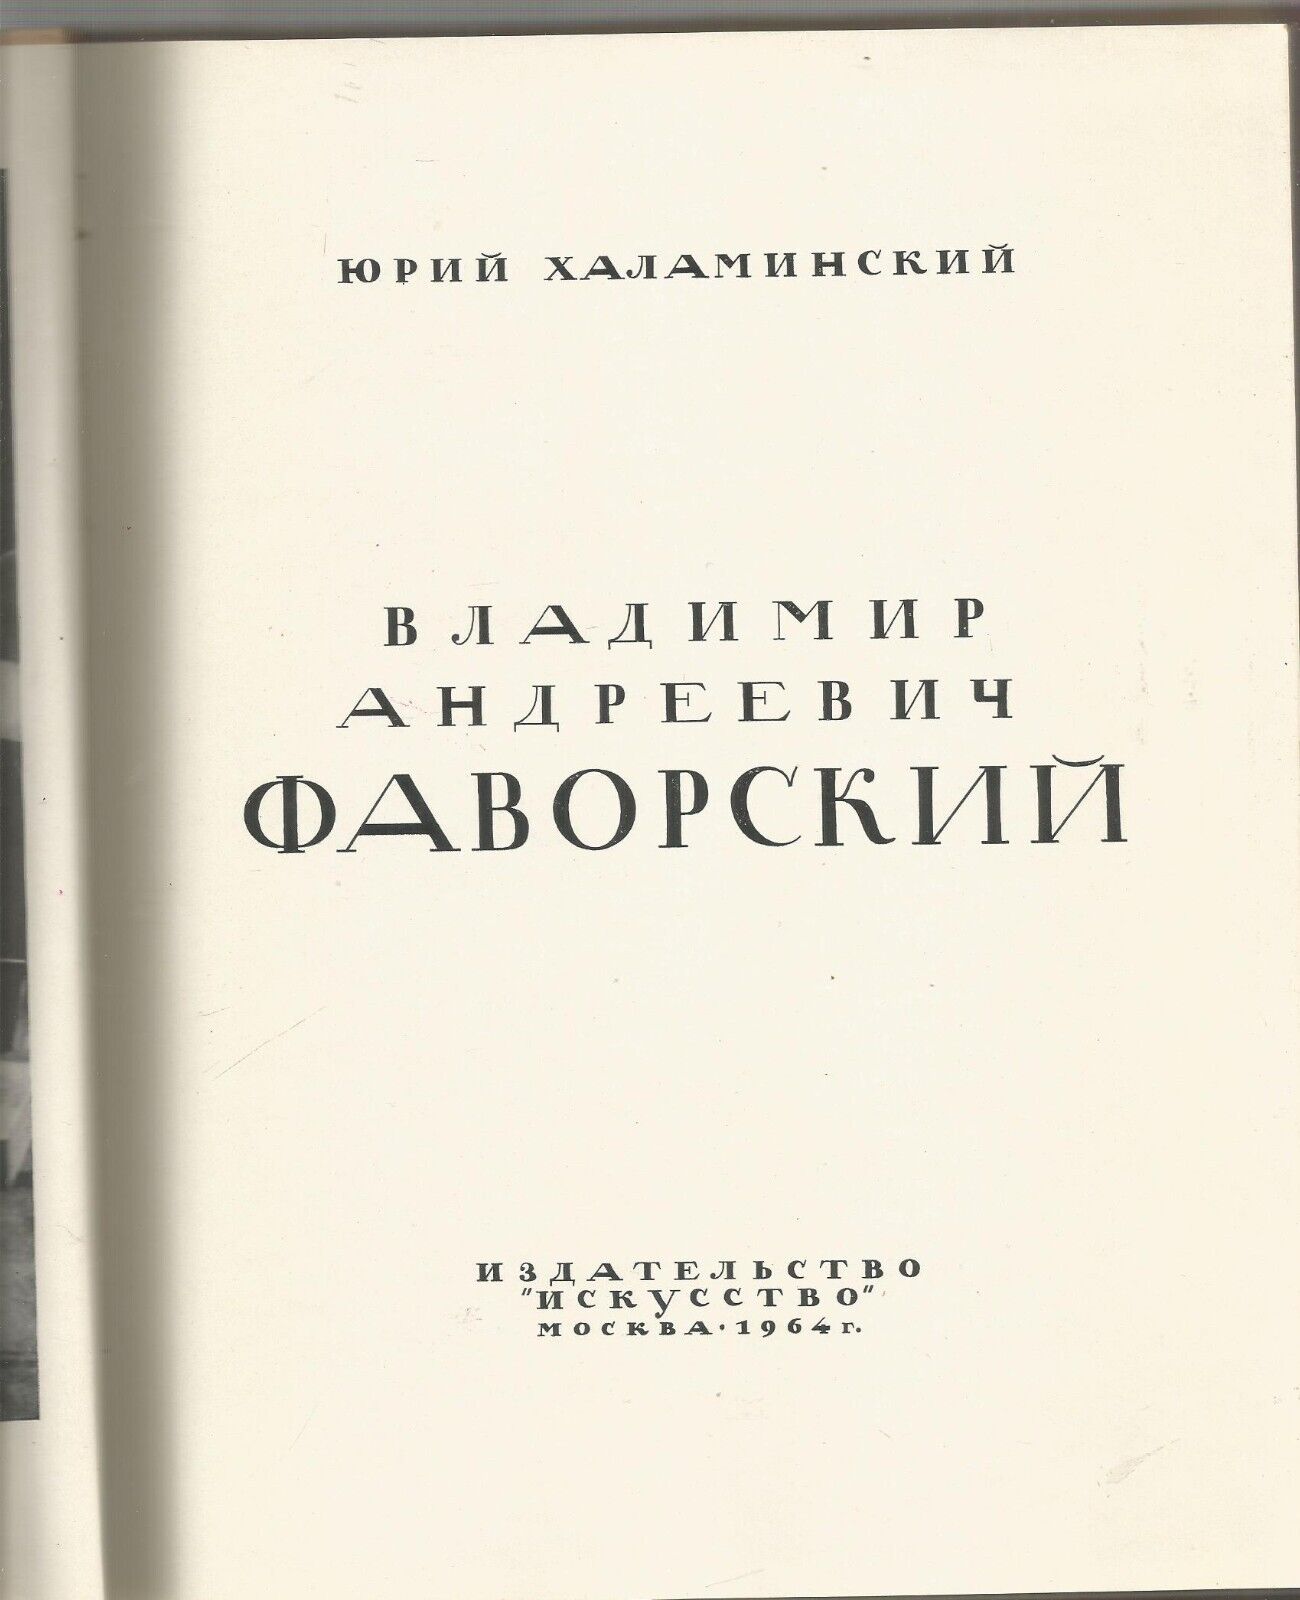 Favorsky. Album and monograph 1964 Фаворский. Альбом и монография.